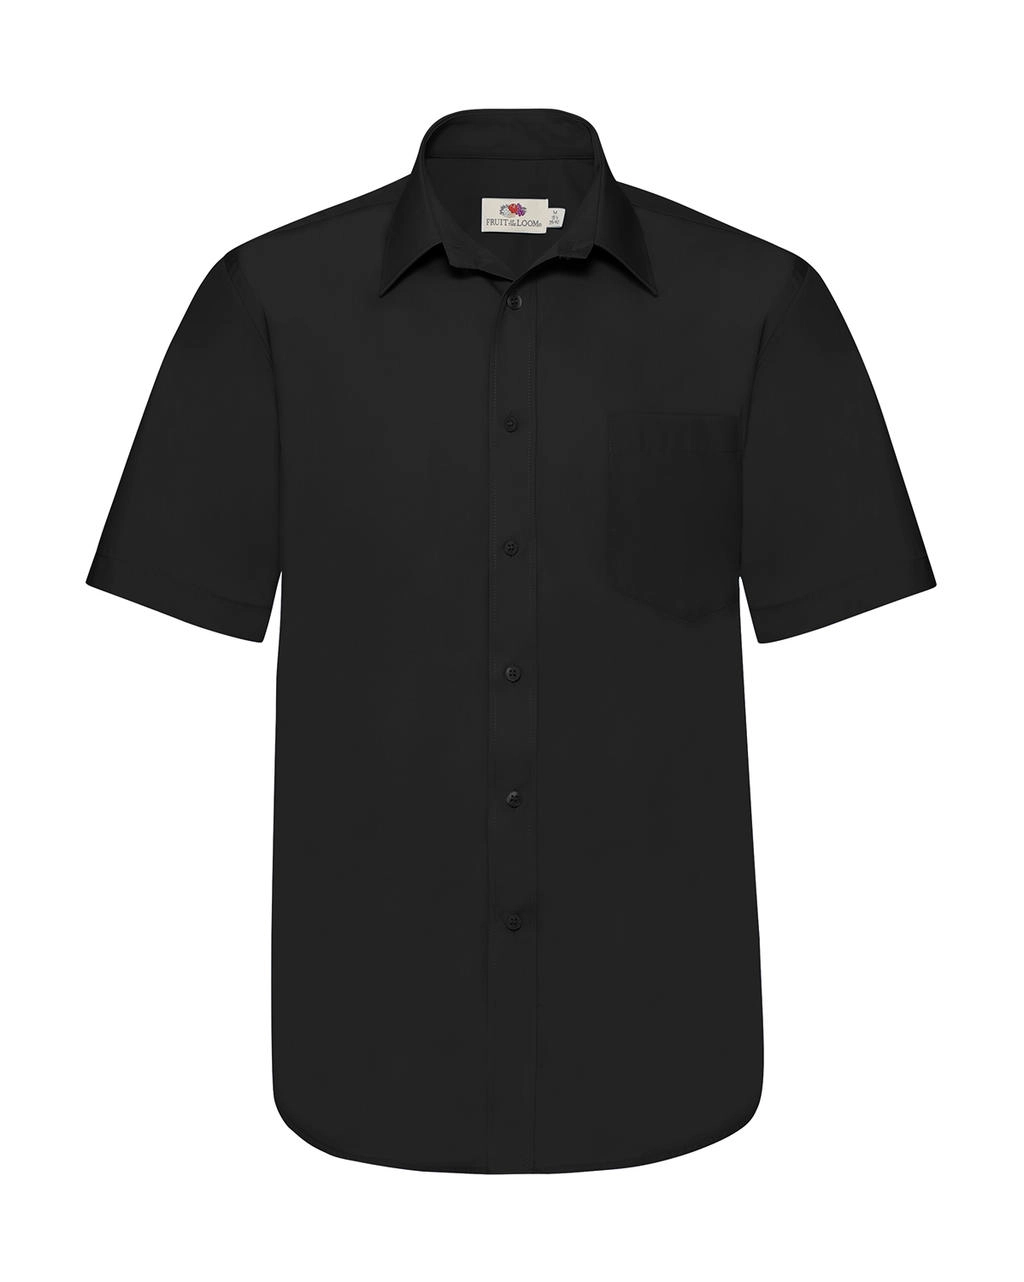 Poplin Shirt zum Besticken und Bedrucken in der Farbe Black mit Ihren Logo, Schriftzug oder Motiv.